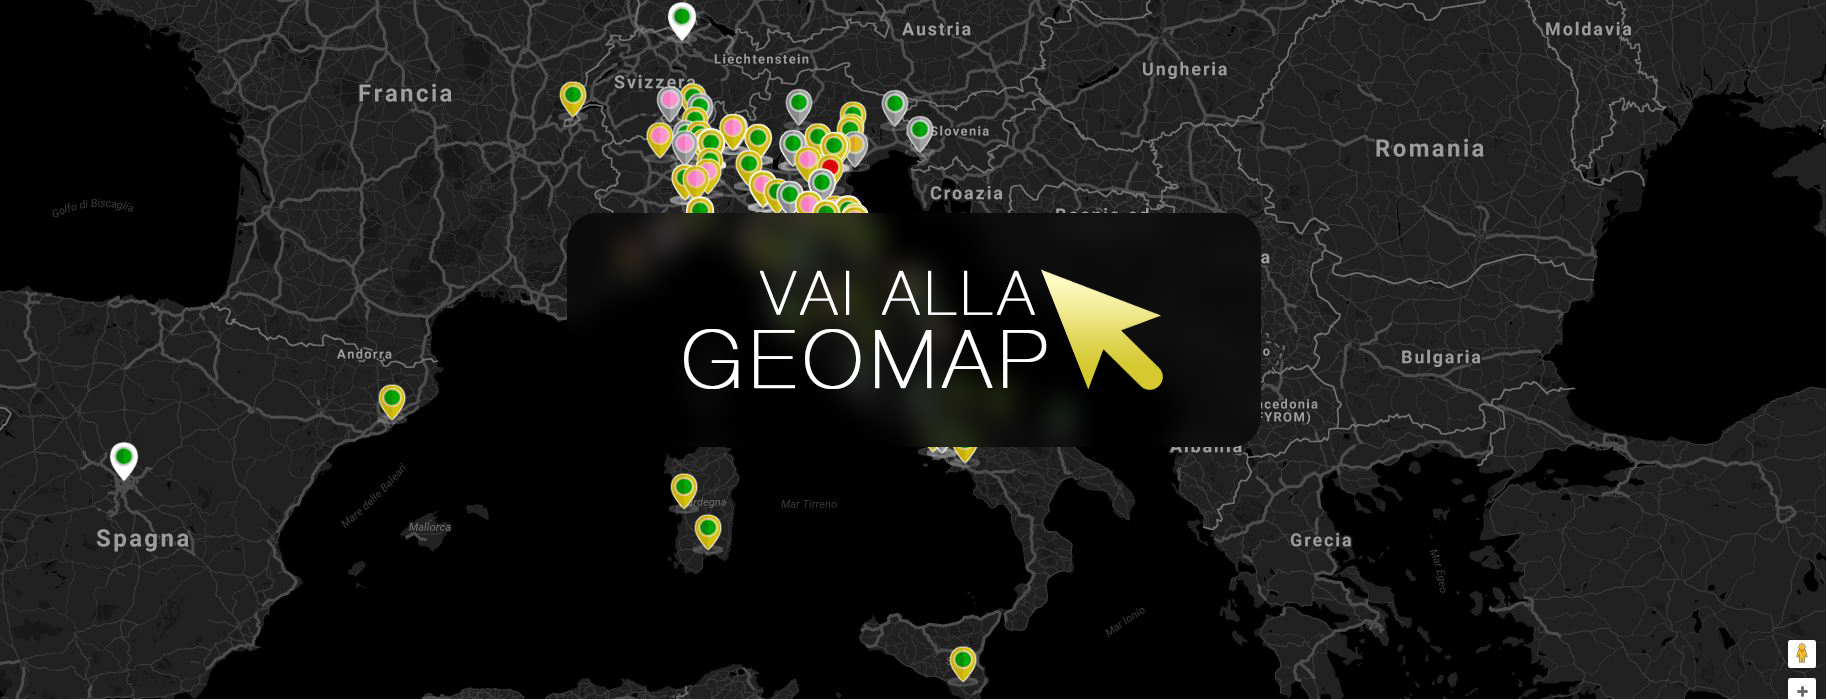 Guarda gli annunci a Verona nella mappa intervattiva